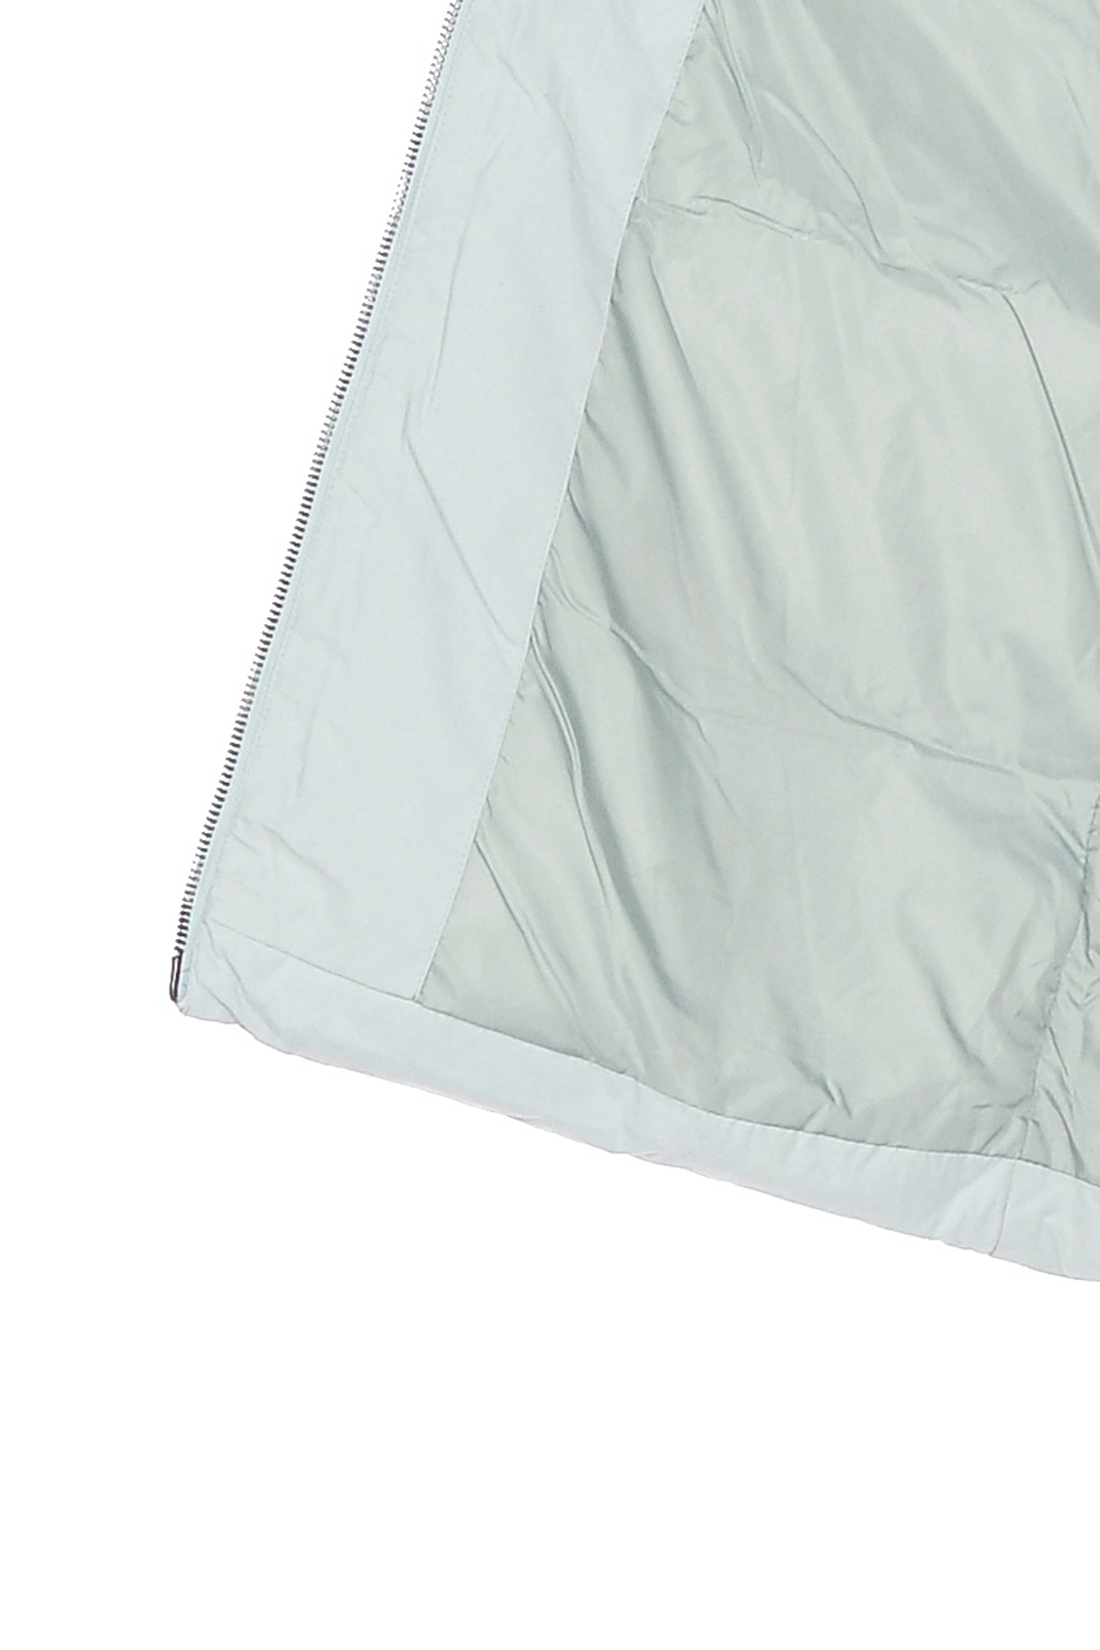 Пуховик-парка с накладными карманами (арт. baon B008509), размер M, цвет зеленый Пуховик-парка с накладными карманами (арт. baon B008509) - фото 4